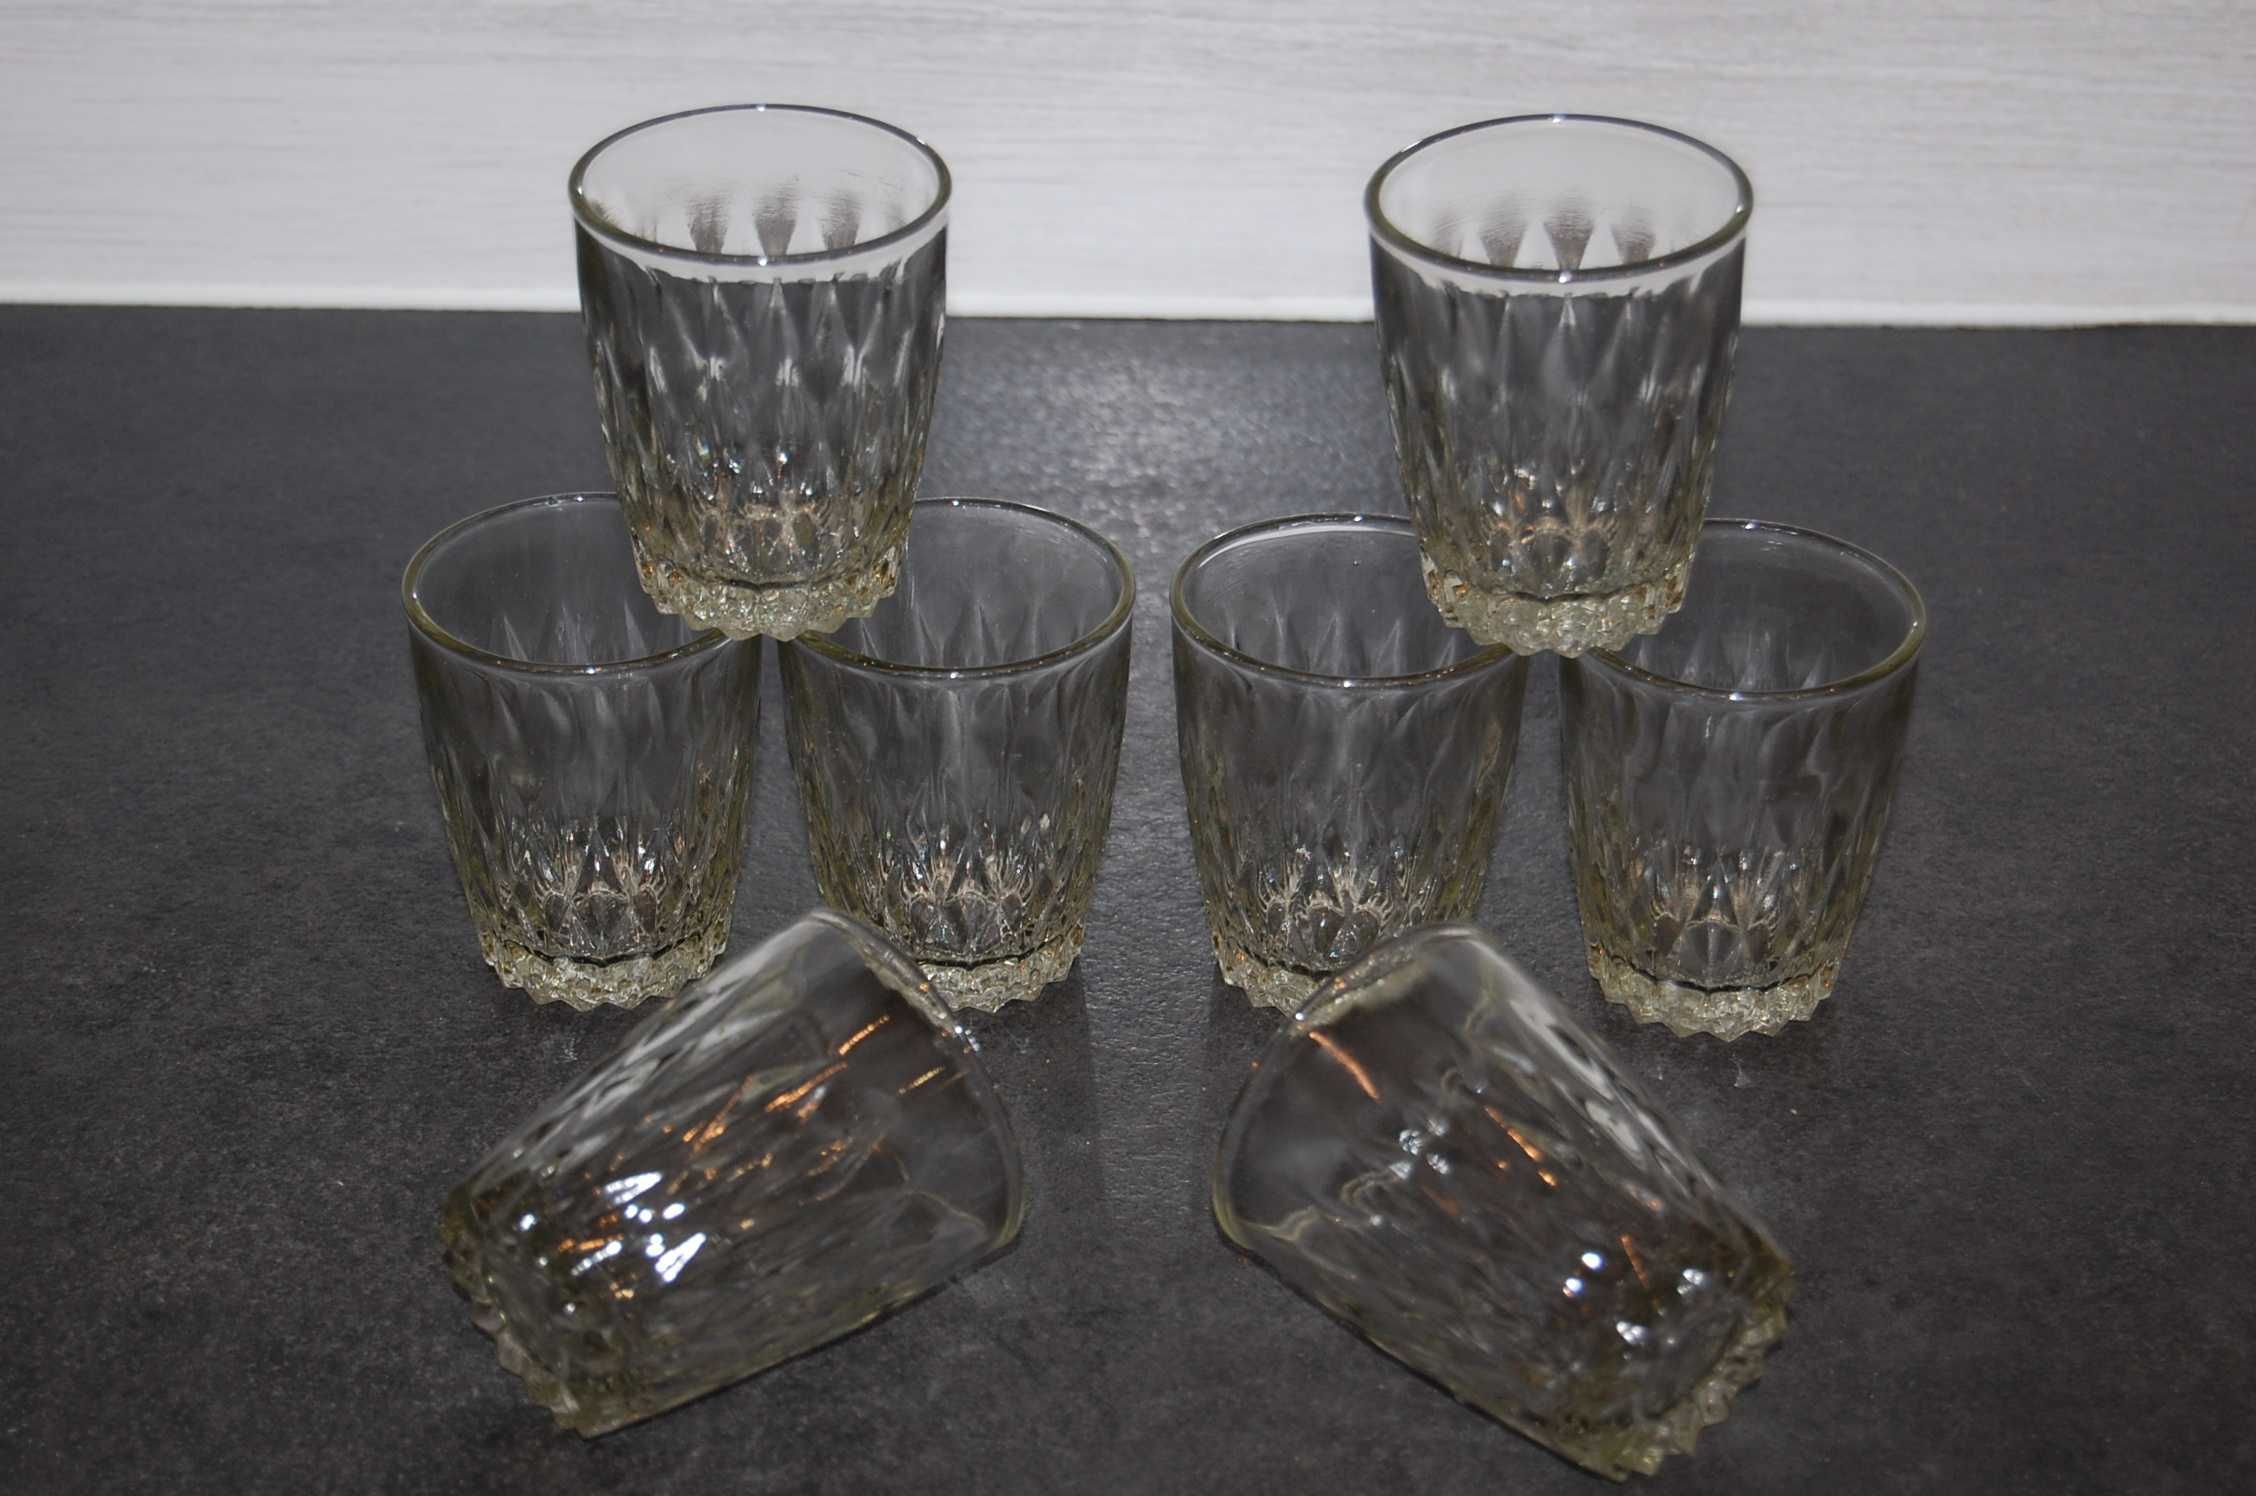 Stare, ozdobne szklaneczki, literatki - karczmiaki - 8 sztuk